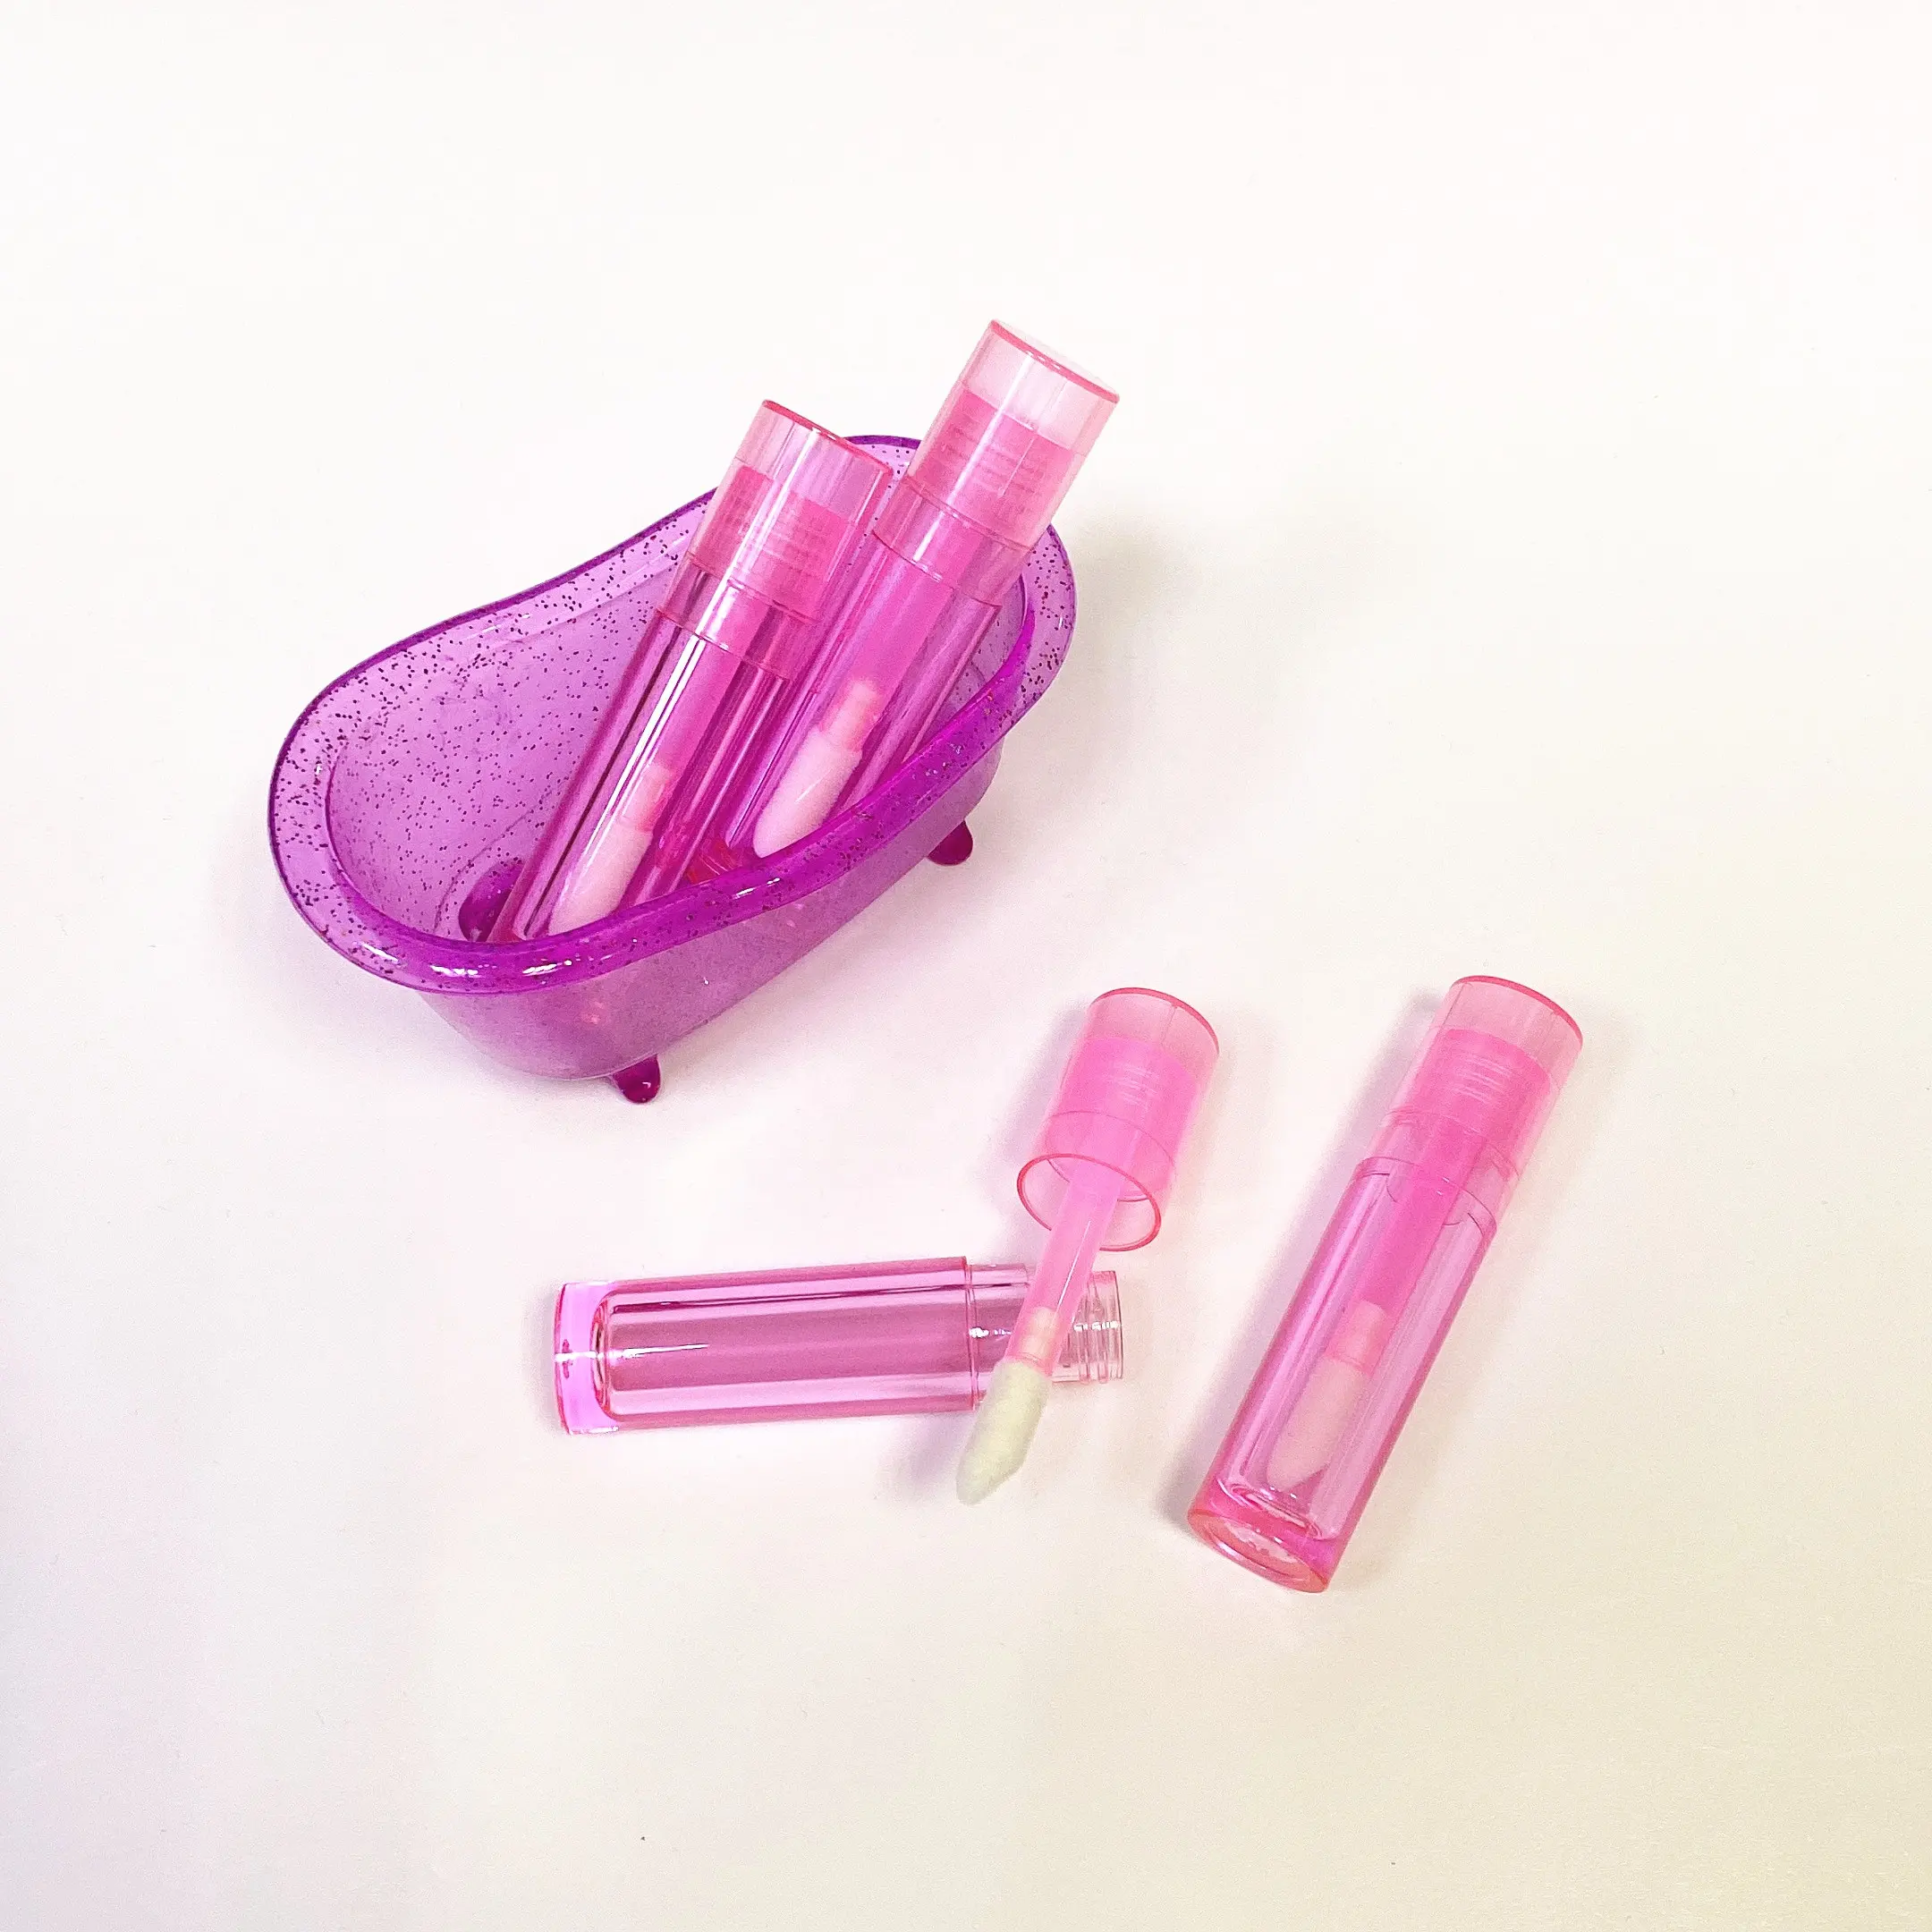 Çocuklar Kylie Jenner etiketleri dudak parlak kutular tüpleri 10ml 7ml 8ml Lipgloss tüp kalın değnek büyük aplikatör